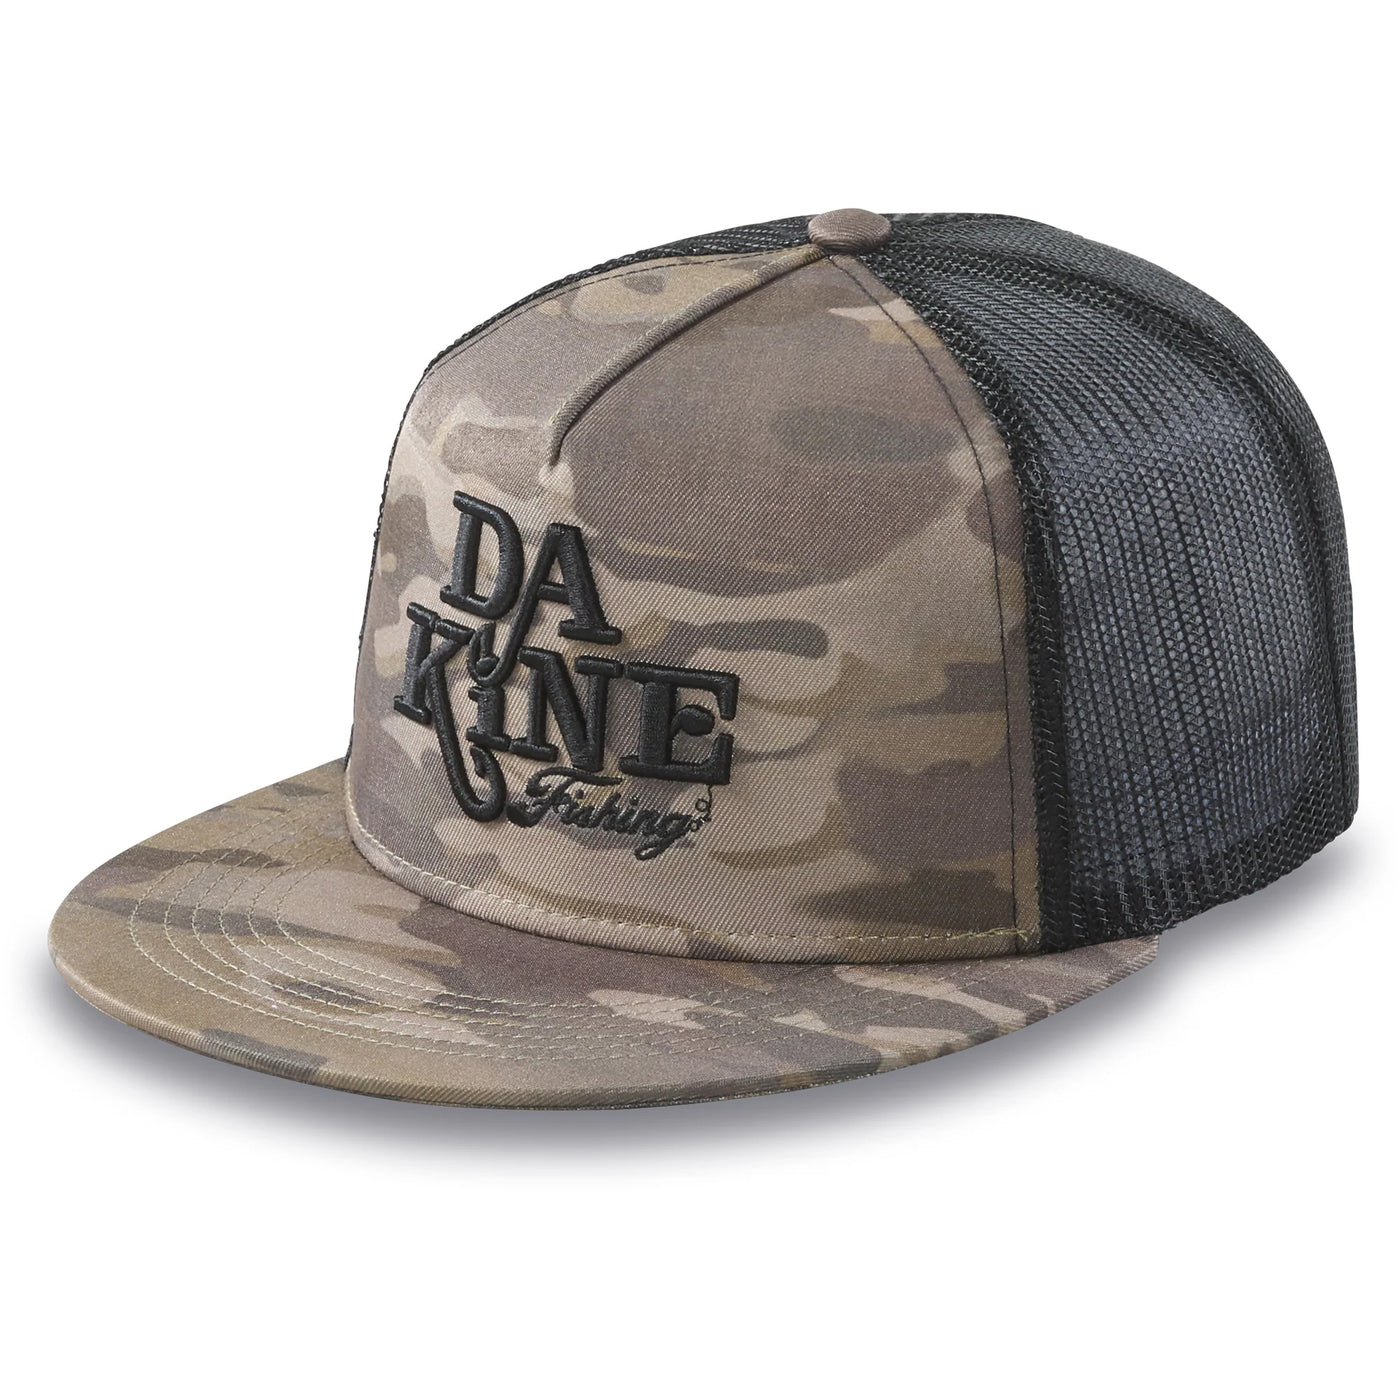 DaKine Offshore Flat Bill Trucker Hat